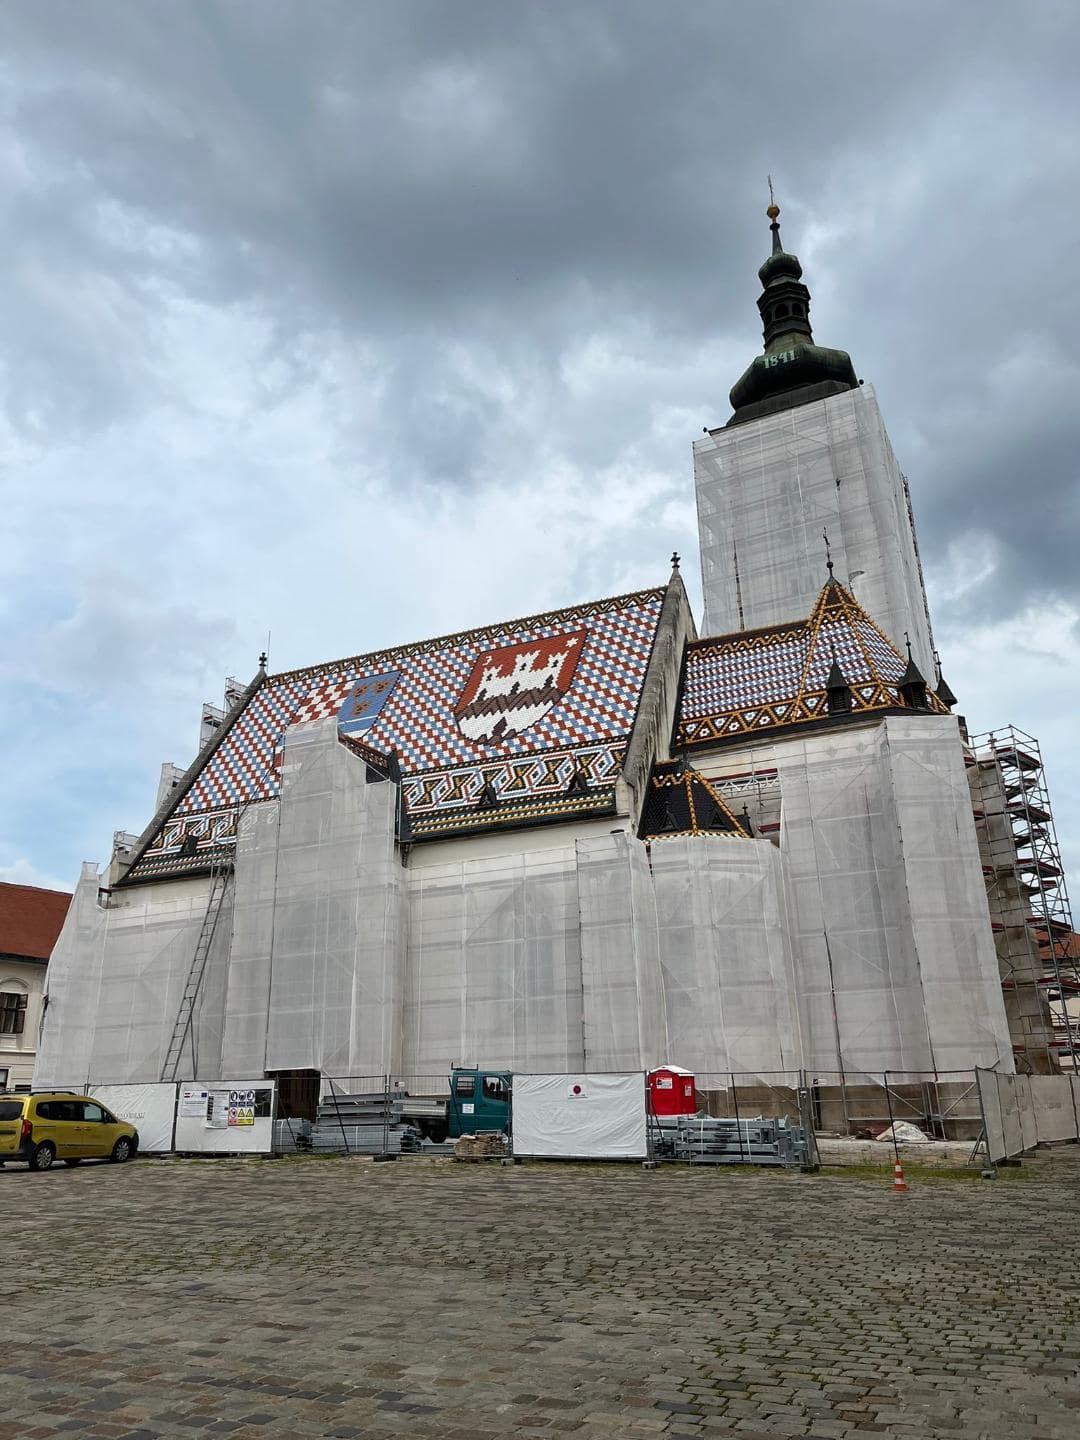 Kostol, ktorý sa rekonštruuje. Jeho strecha je pekne farebná s rôznymi chorvátskymi erbami.